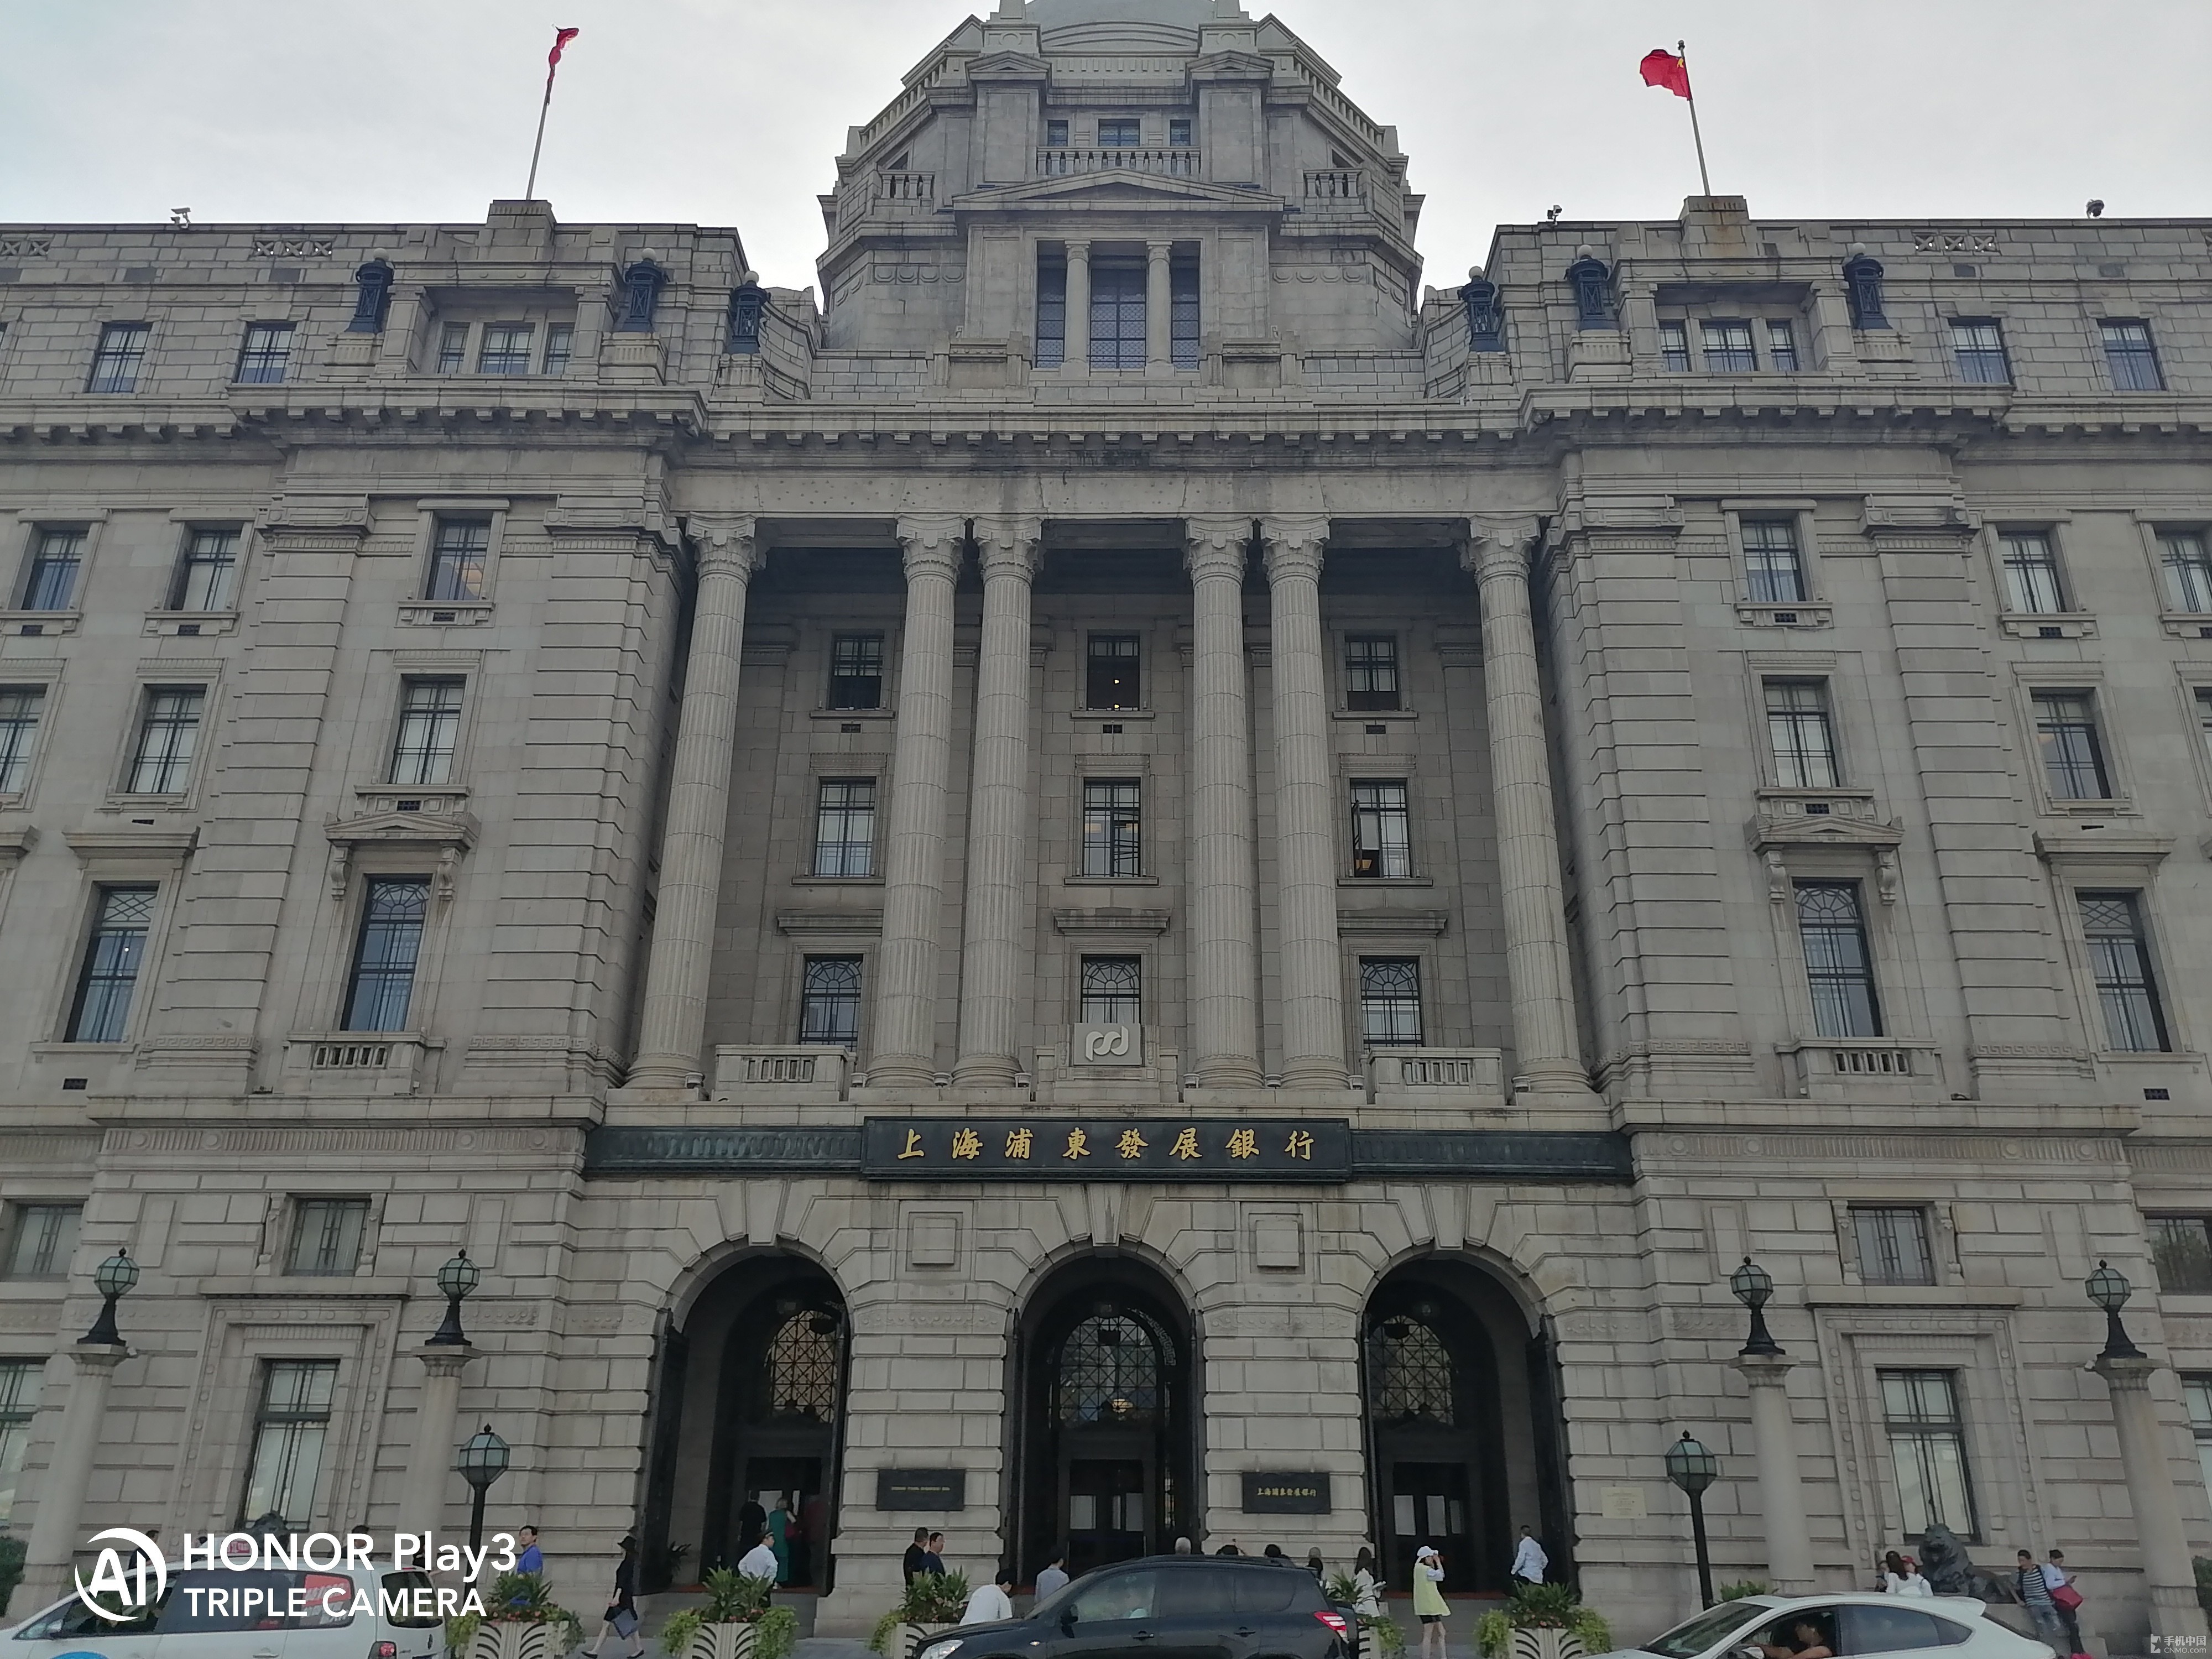 上海浦东发展银行大楼在建筑风格上属于新希腊建筑,1923年建立之初被